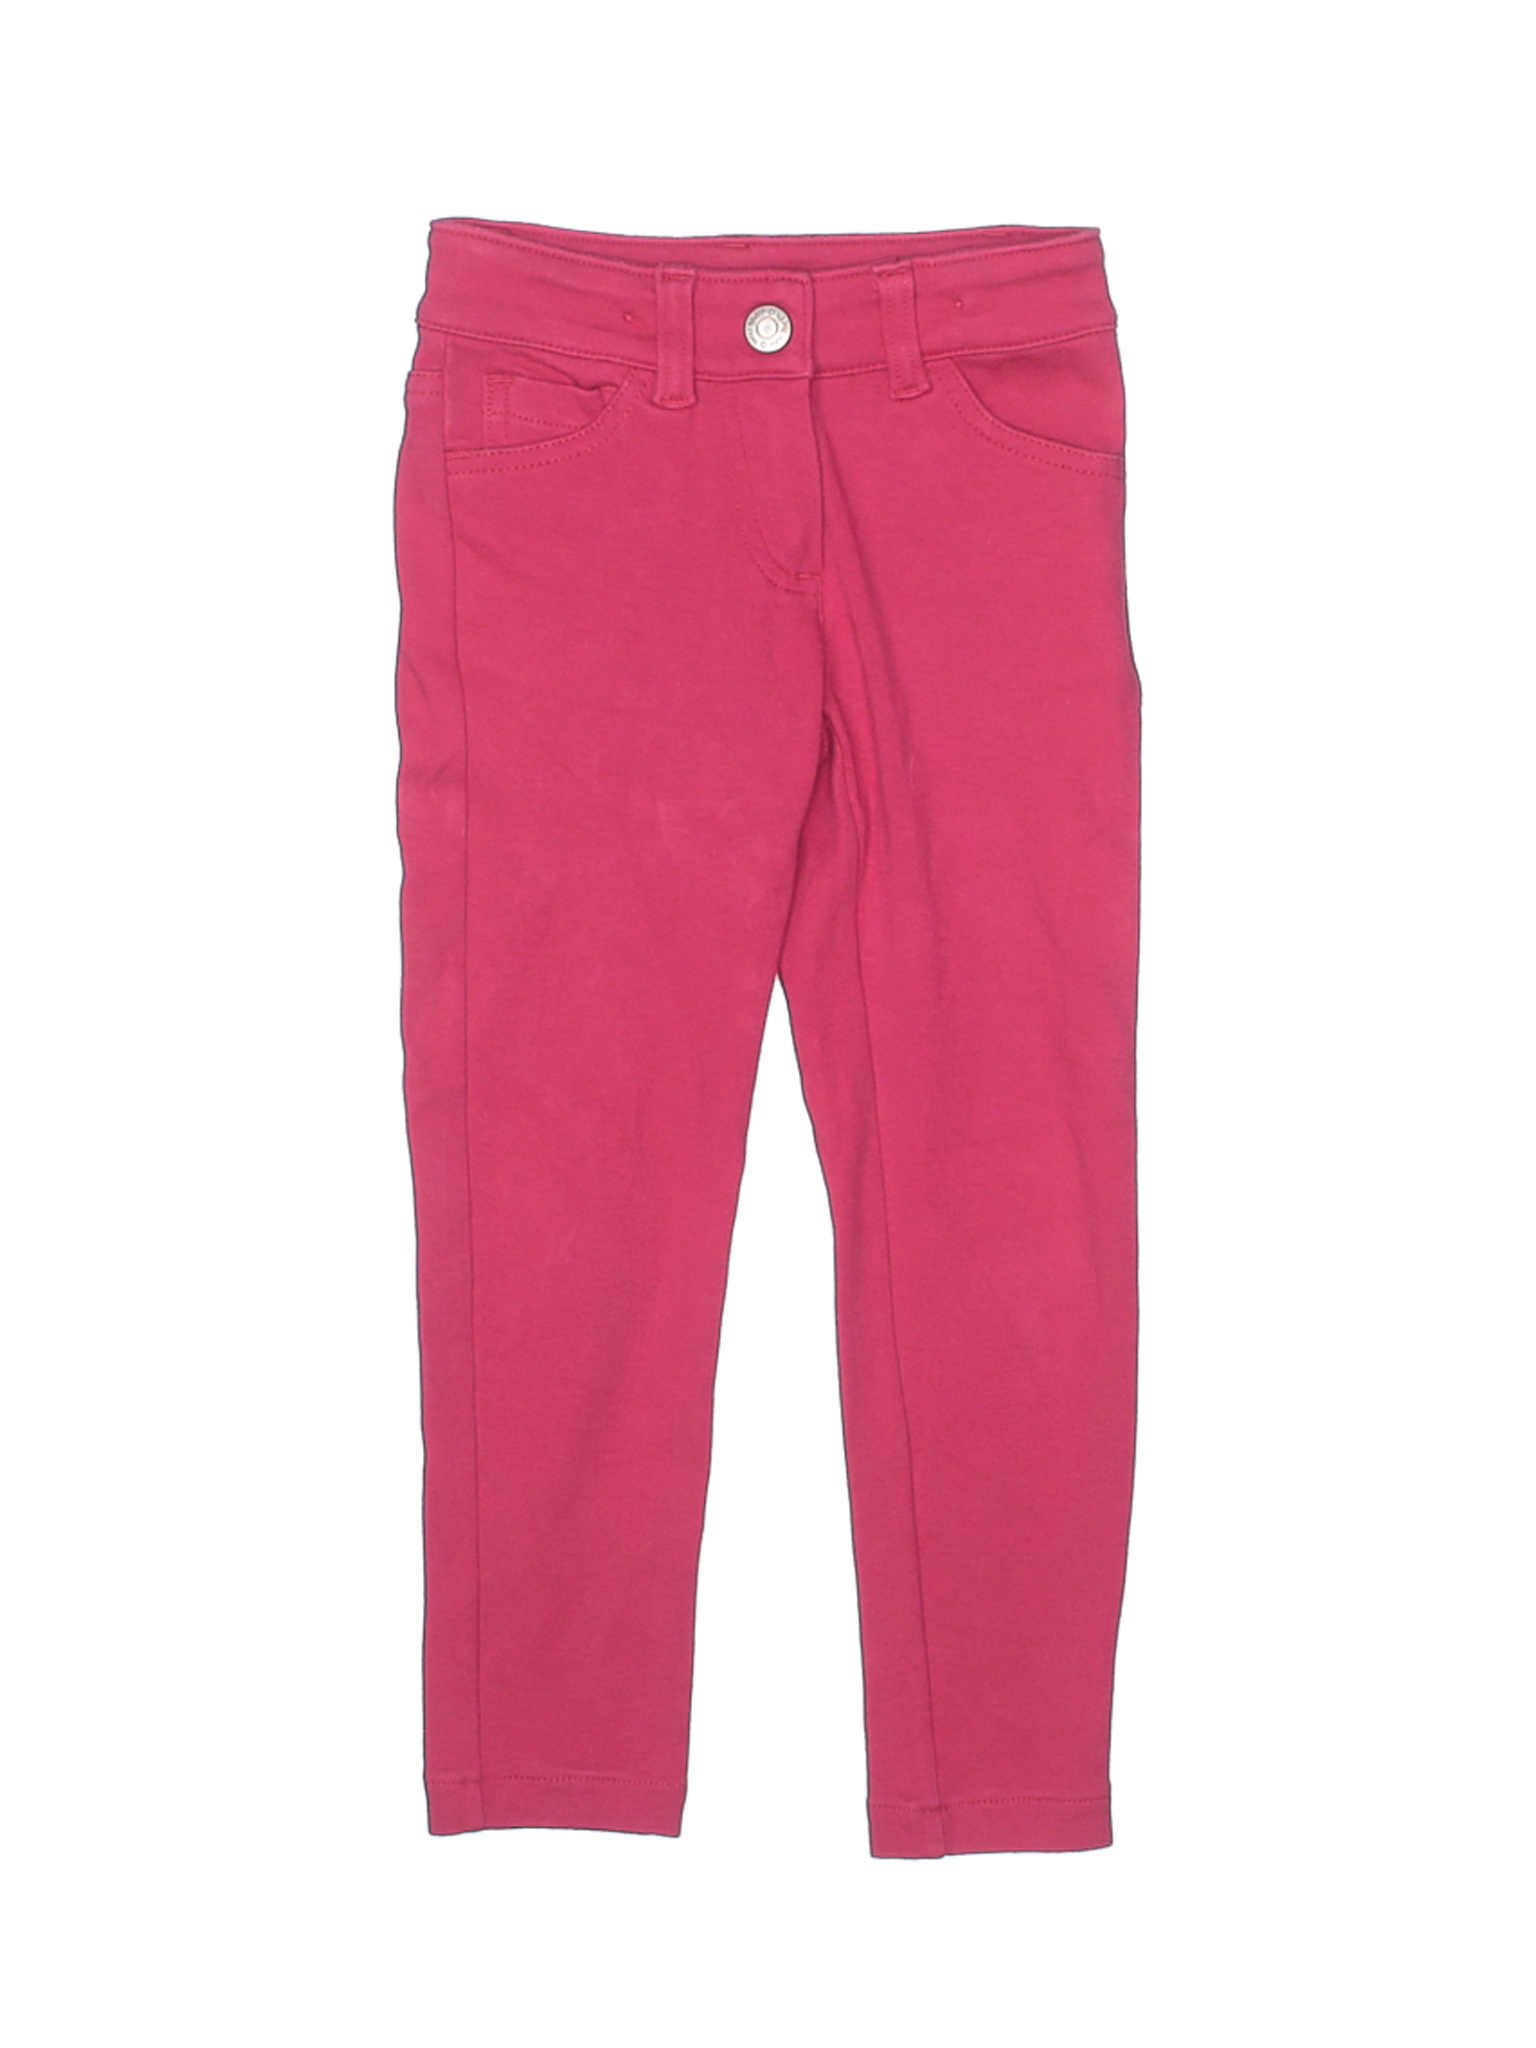 Mini Boden Girls Pink Jeggings 4 | eBay